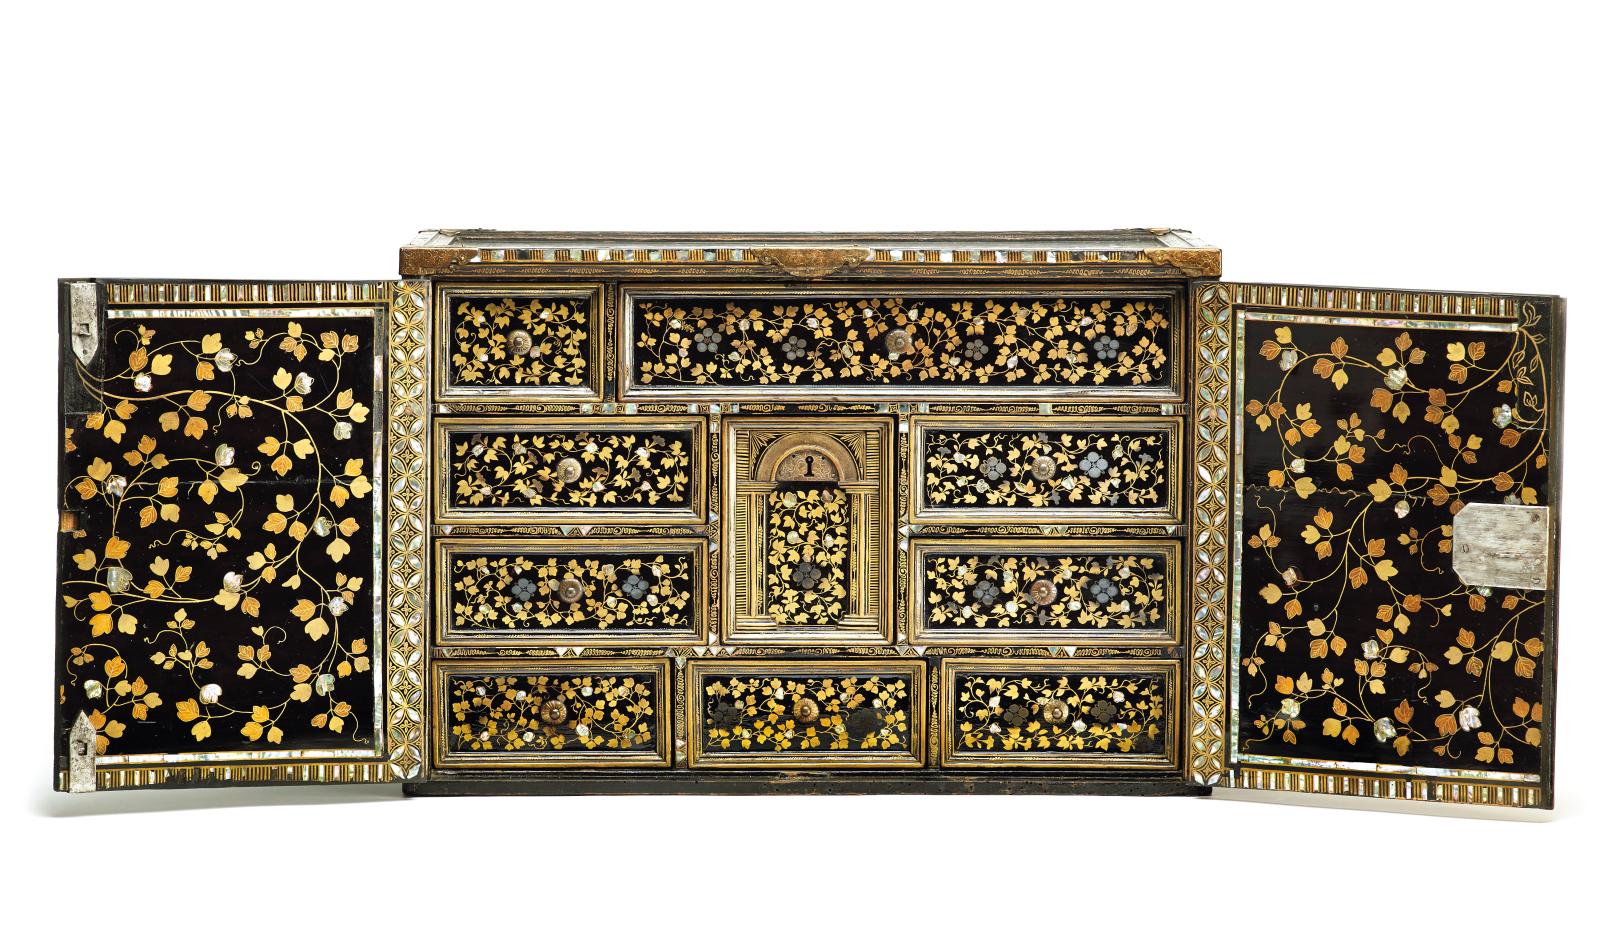 Japon, époque d'Edo, vers 1600-1630. Cabinet namban, bois laqué noir (urushi),décor en aplat de poudre d’or et d’argent (hiramaki-e), incr